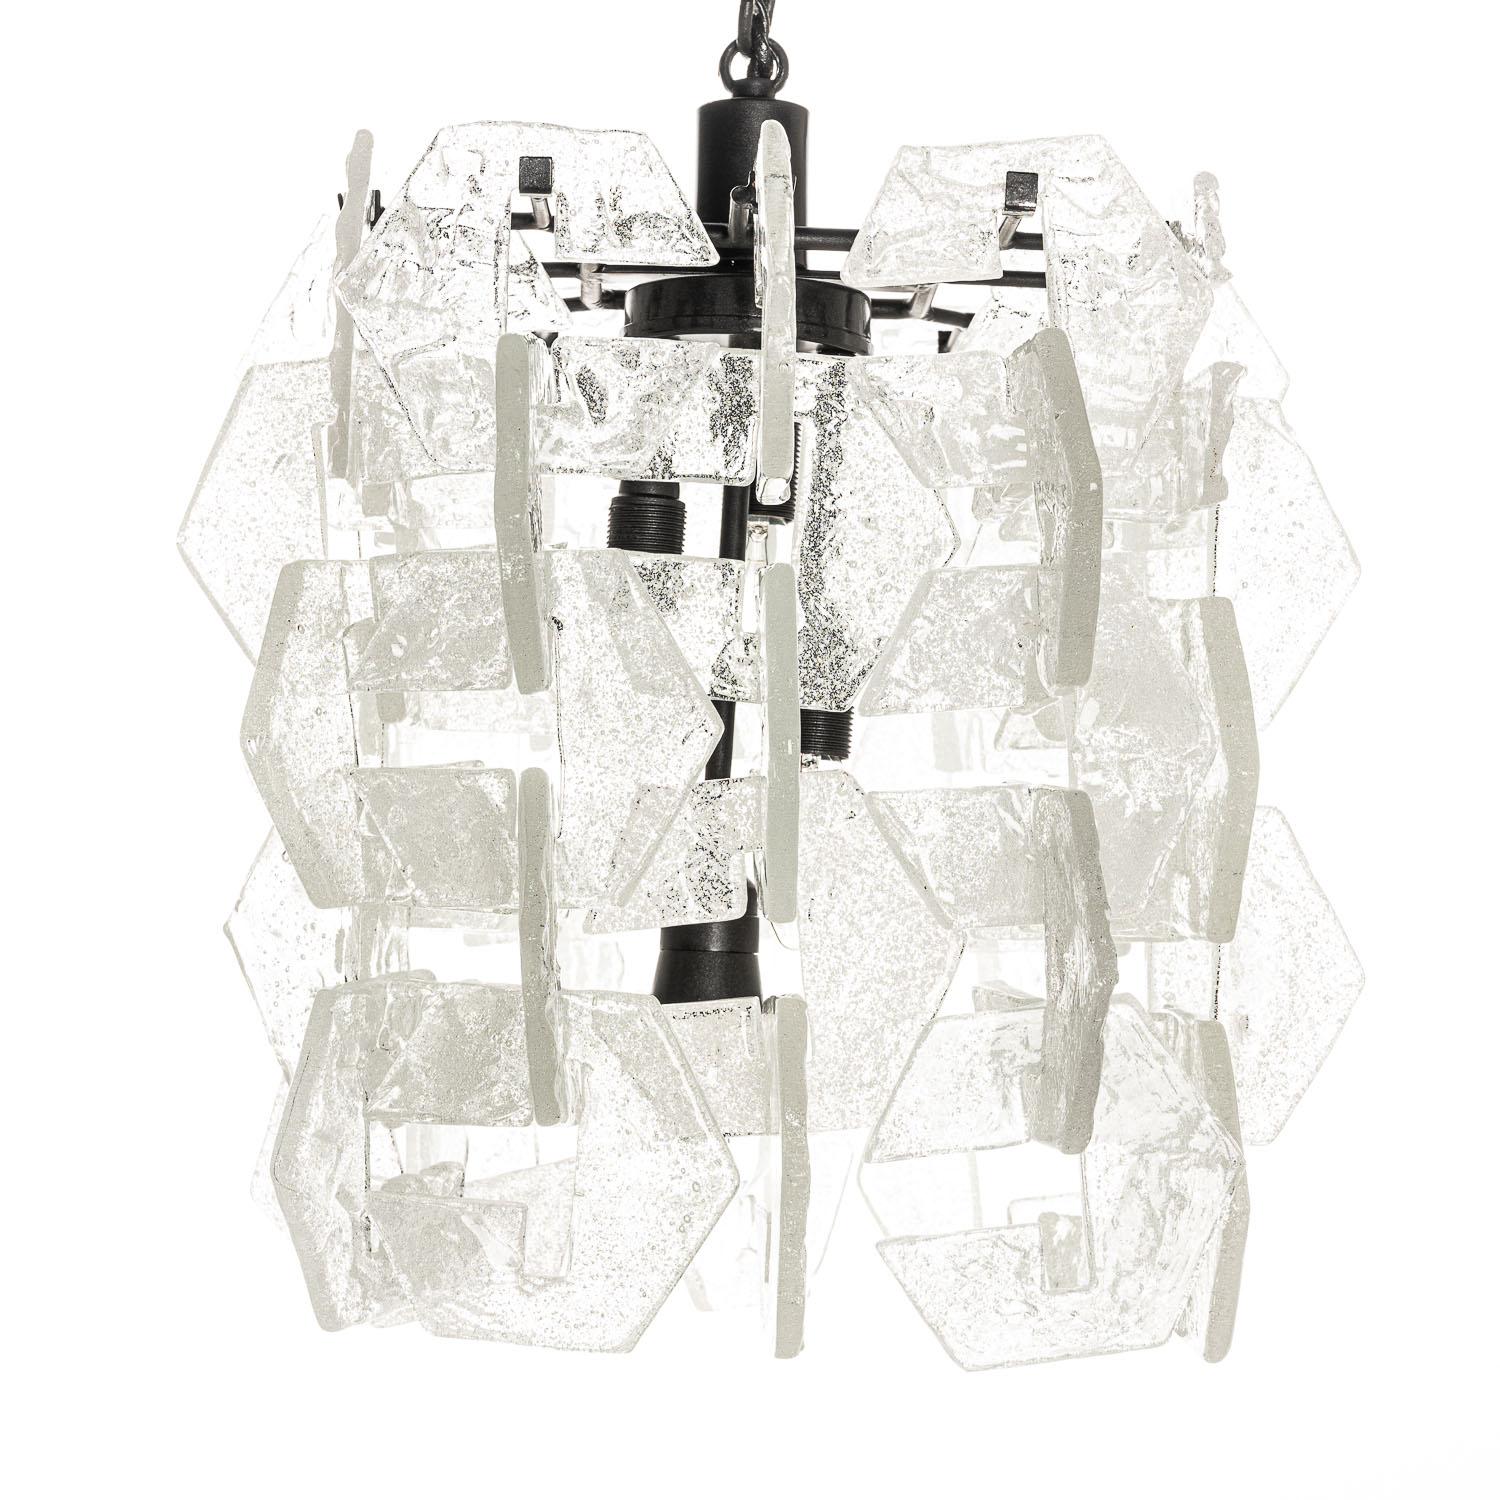 Cette pièce est l'œuvre du designer Carlo Nason. Les 60 pièces texturées qui entourent les quatre ampoules sont uniques et élégantes dans leur forme. Lorsqu'il est éclairé, il diffuse magnifiquement la lumière tout en soulignant le soin et